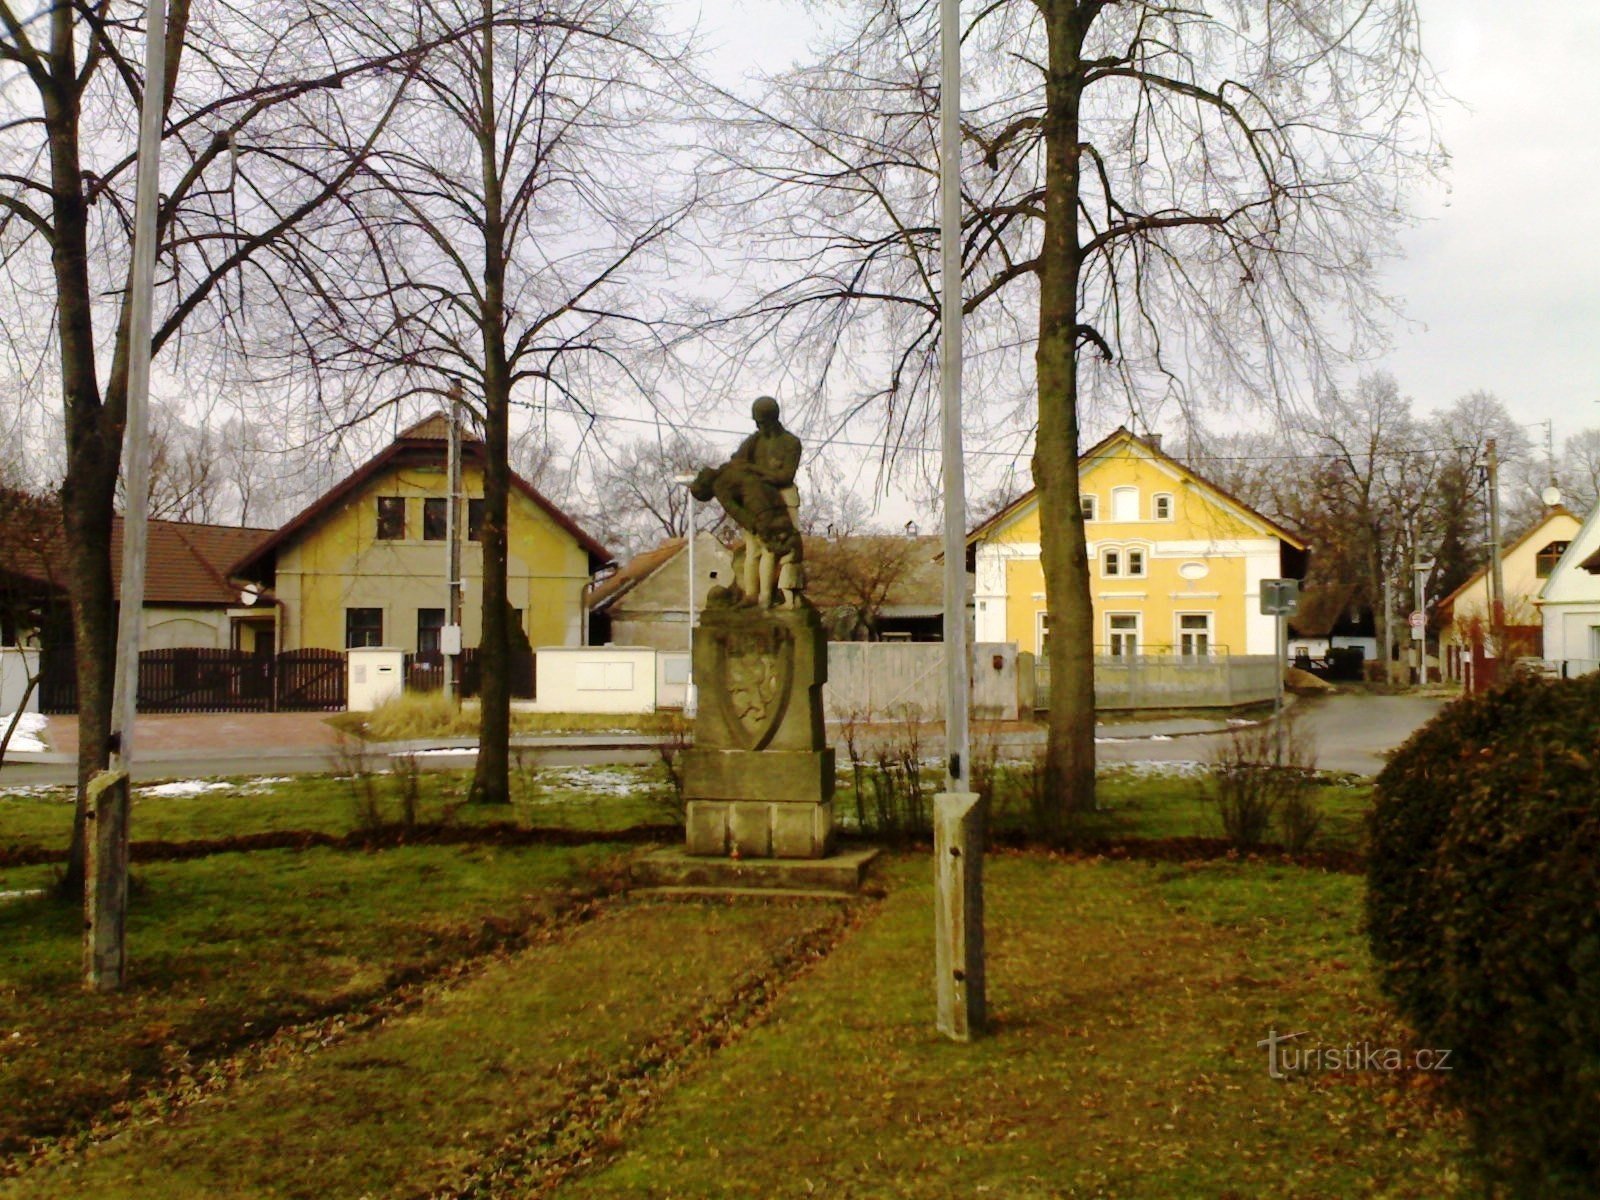 Malšova lhota - đài tưởng niệm các nạn nhân chiến tranh